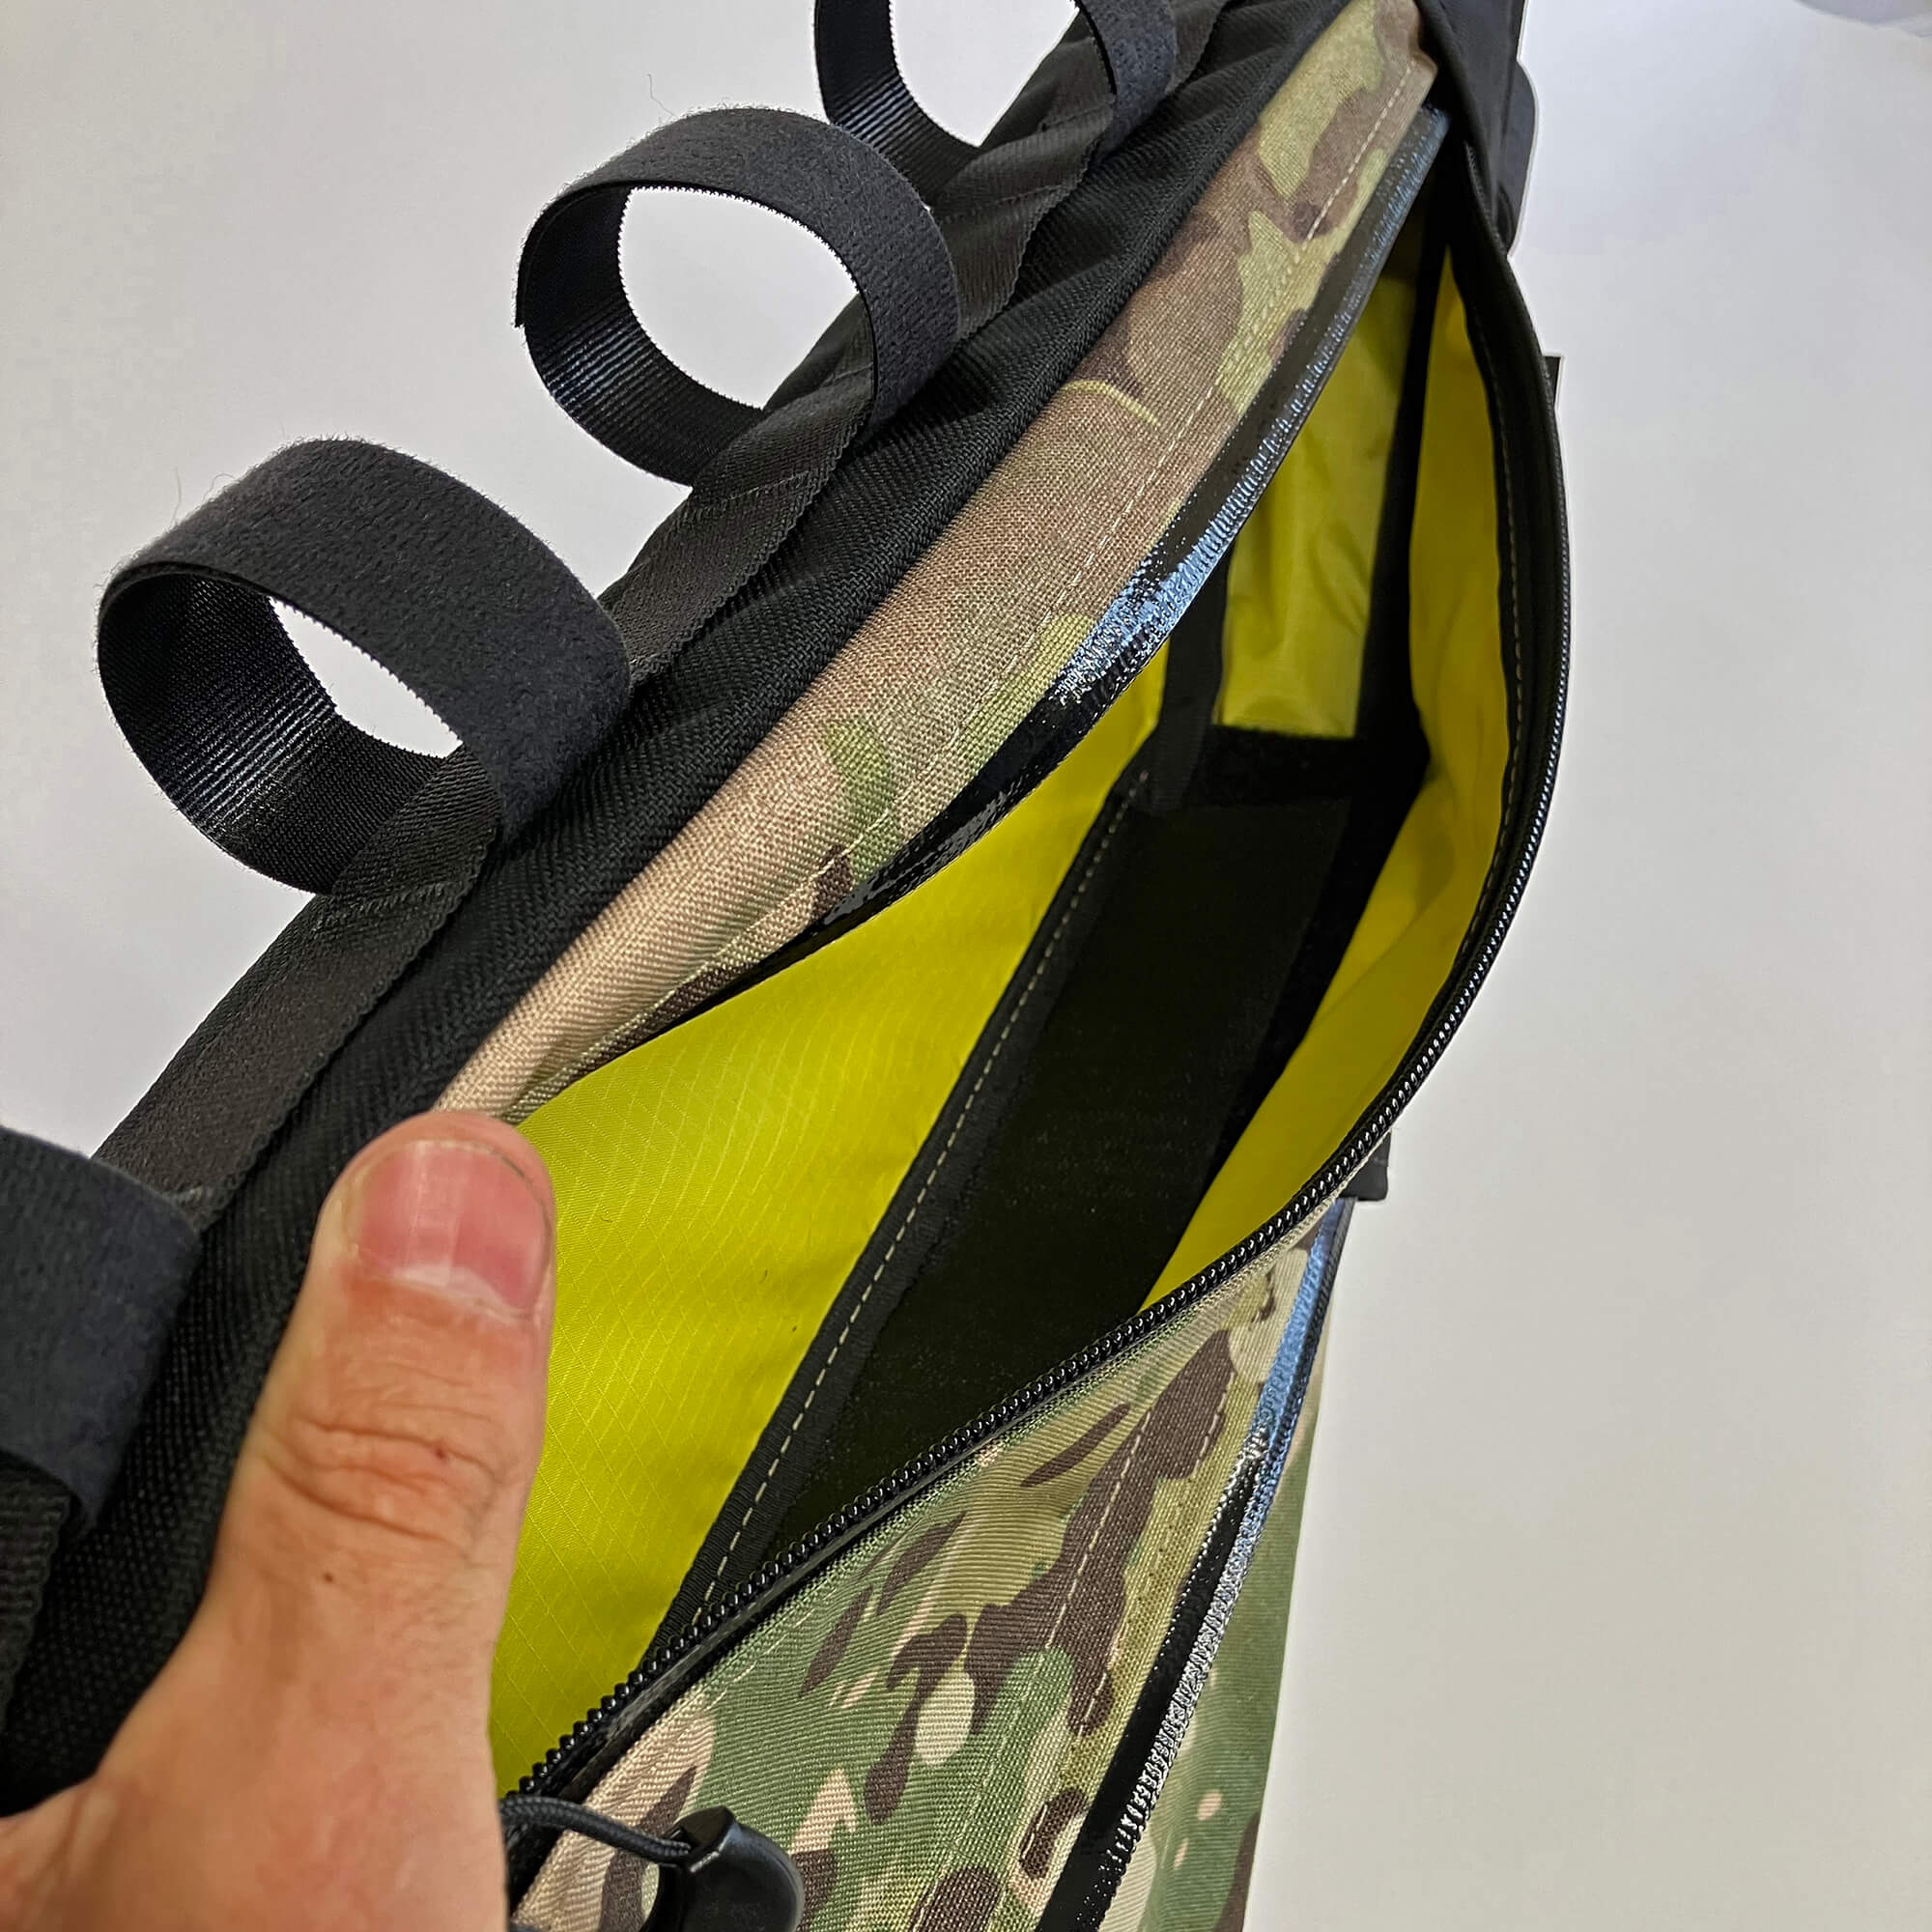 frame bag double zip divider